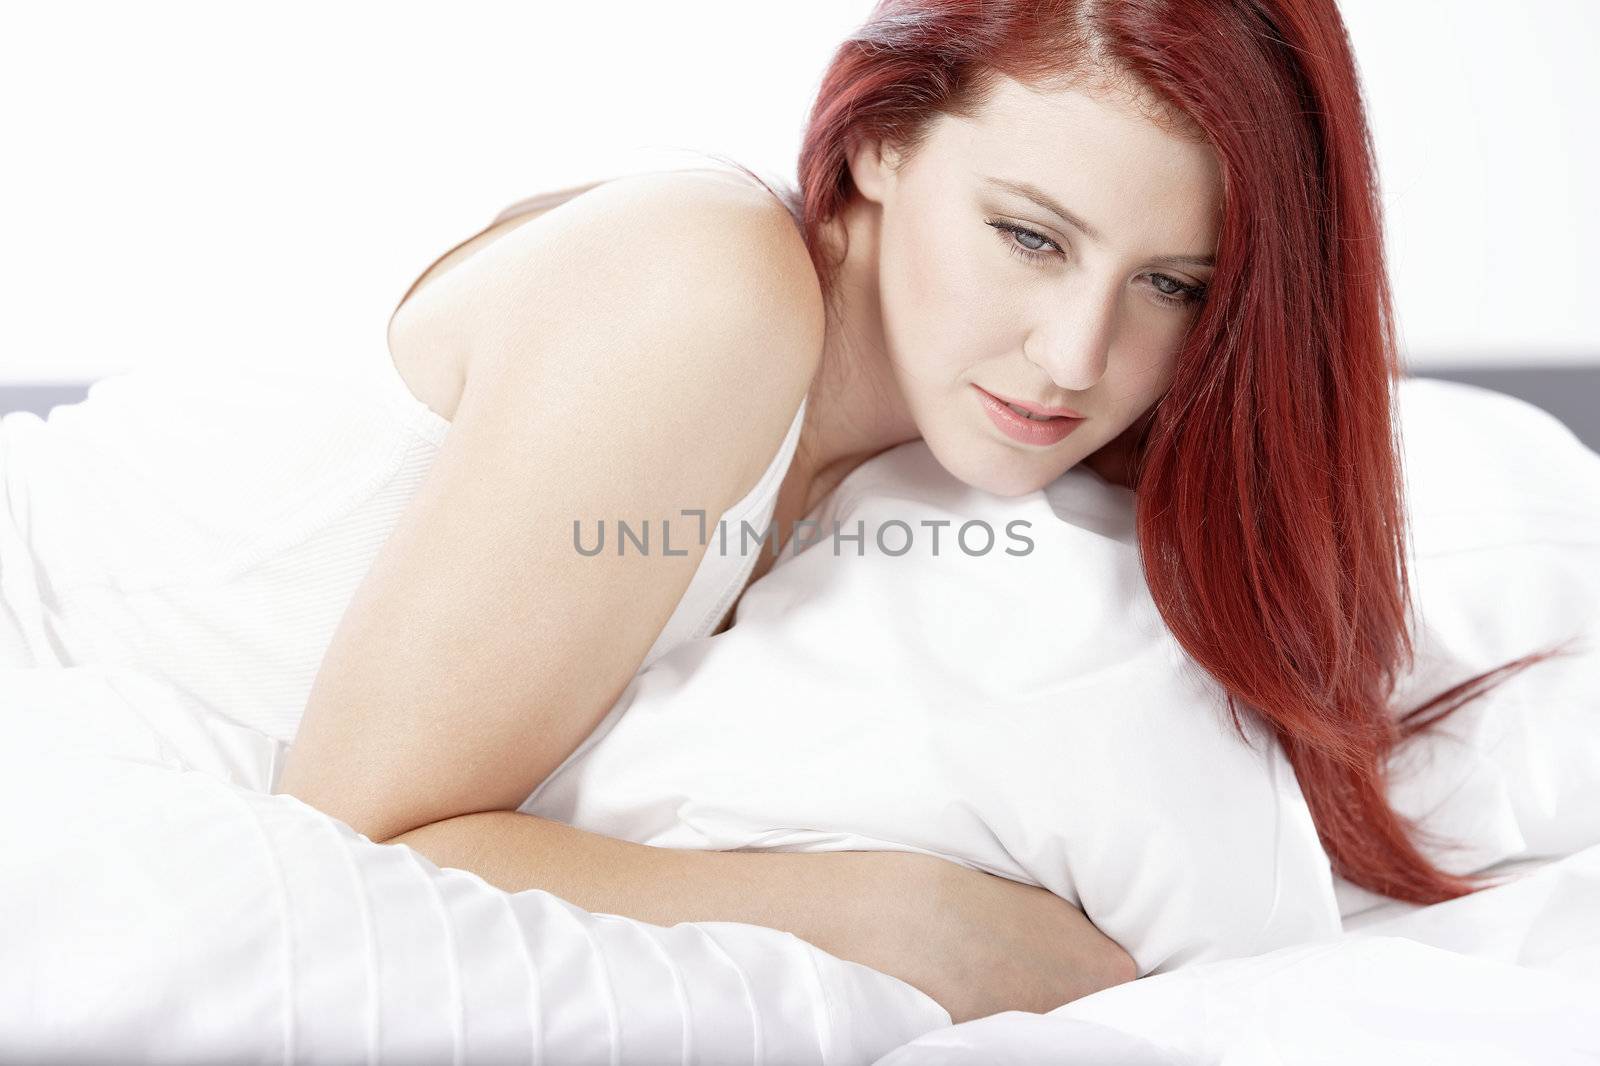 Woman lying on bed by studiofi